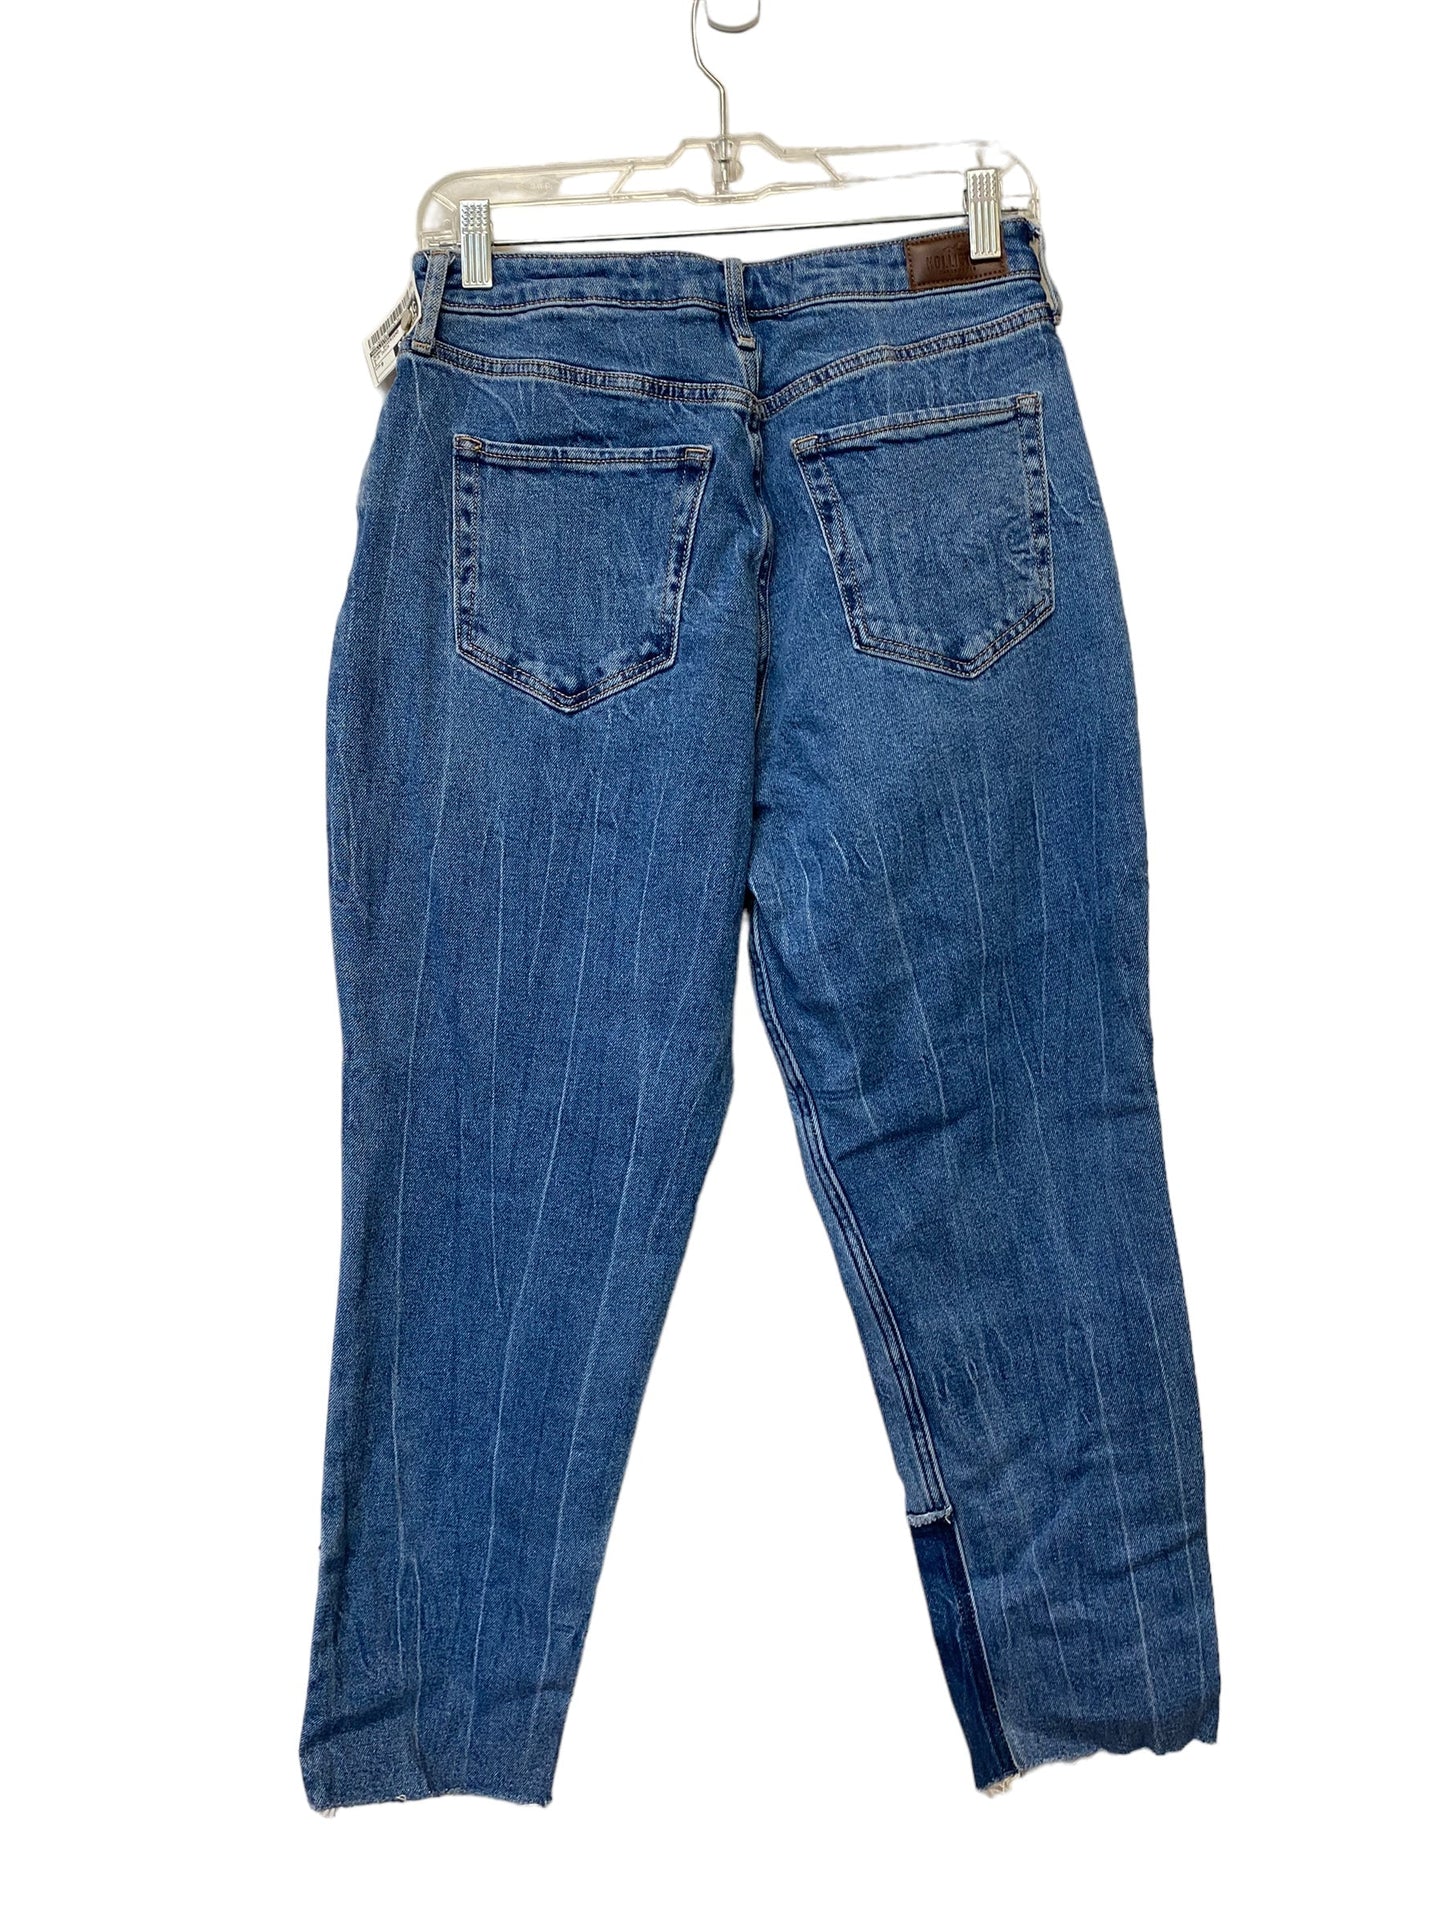 Jeans Boyfriend By Hollister  Size: 9